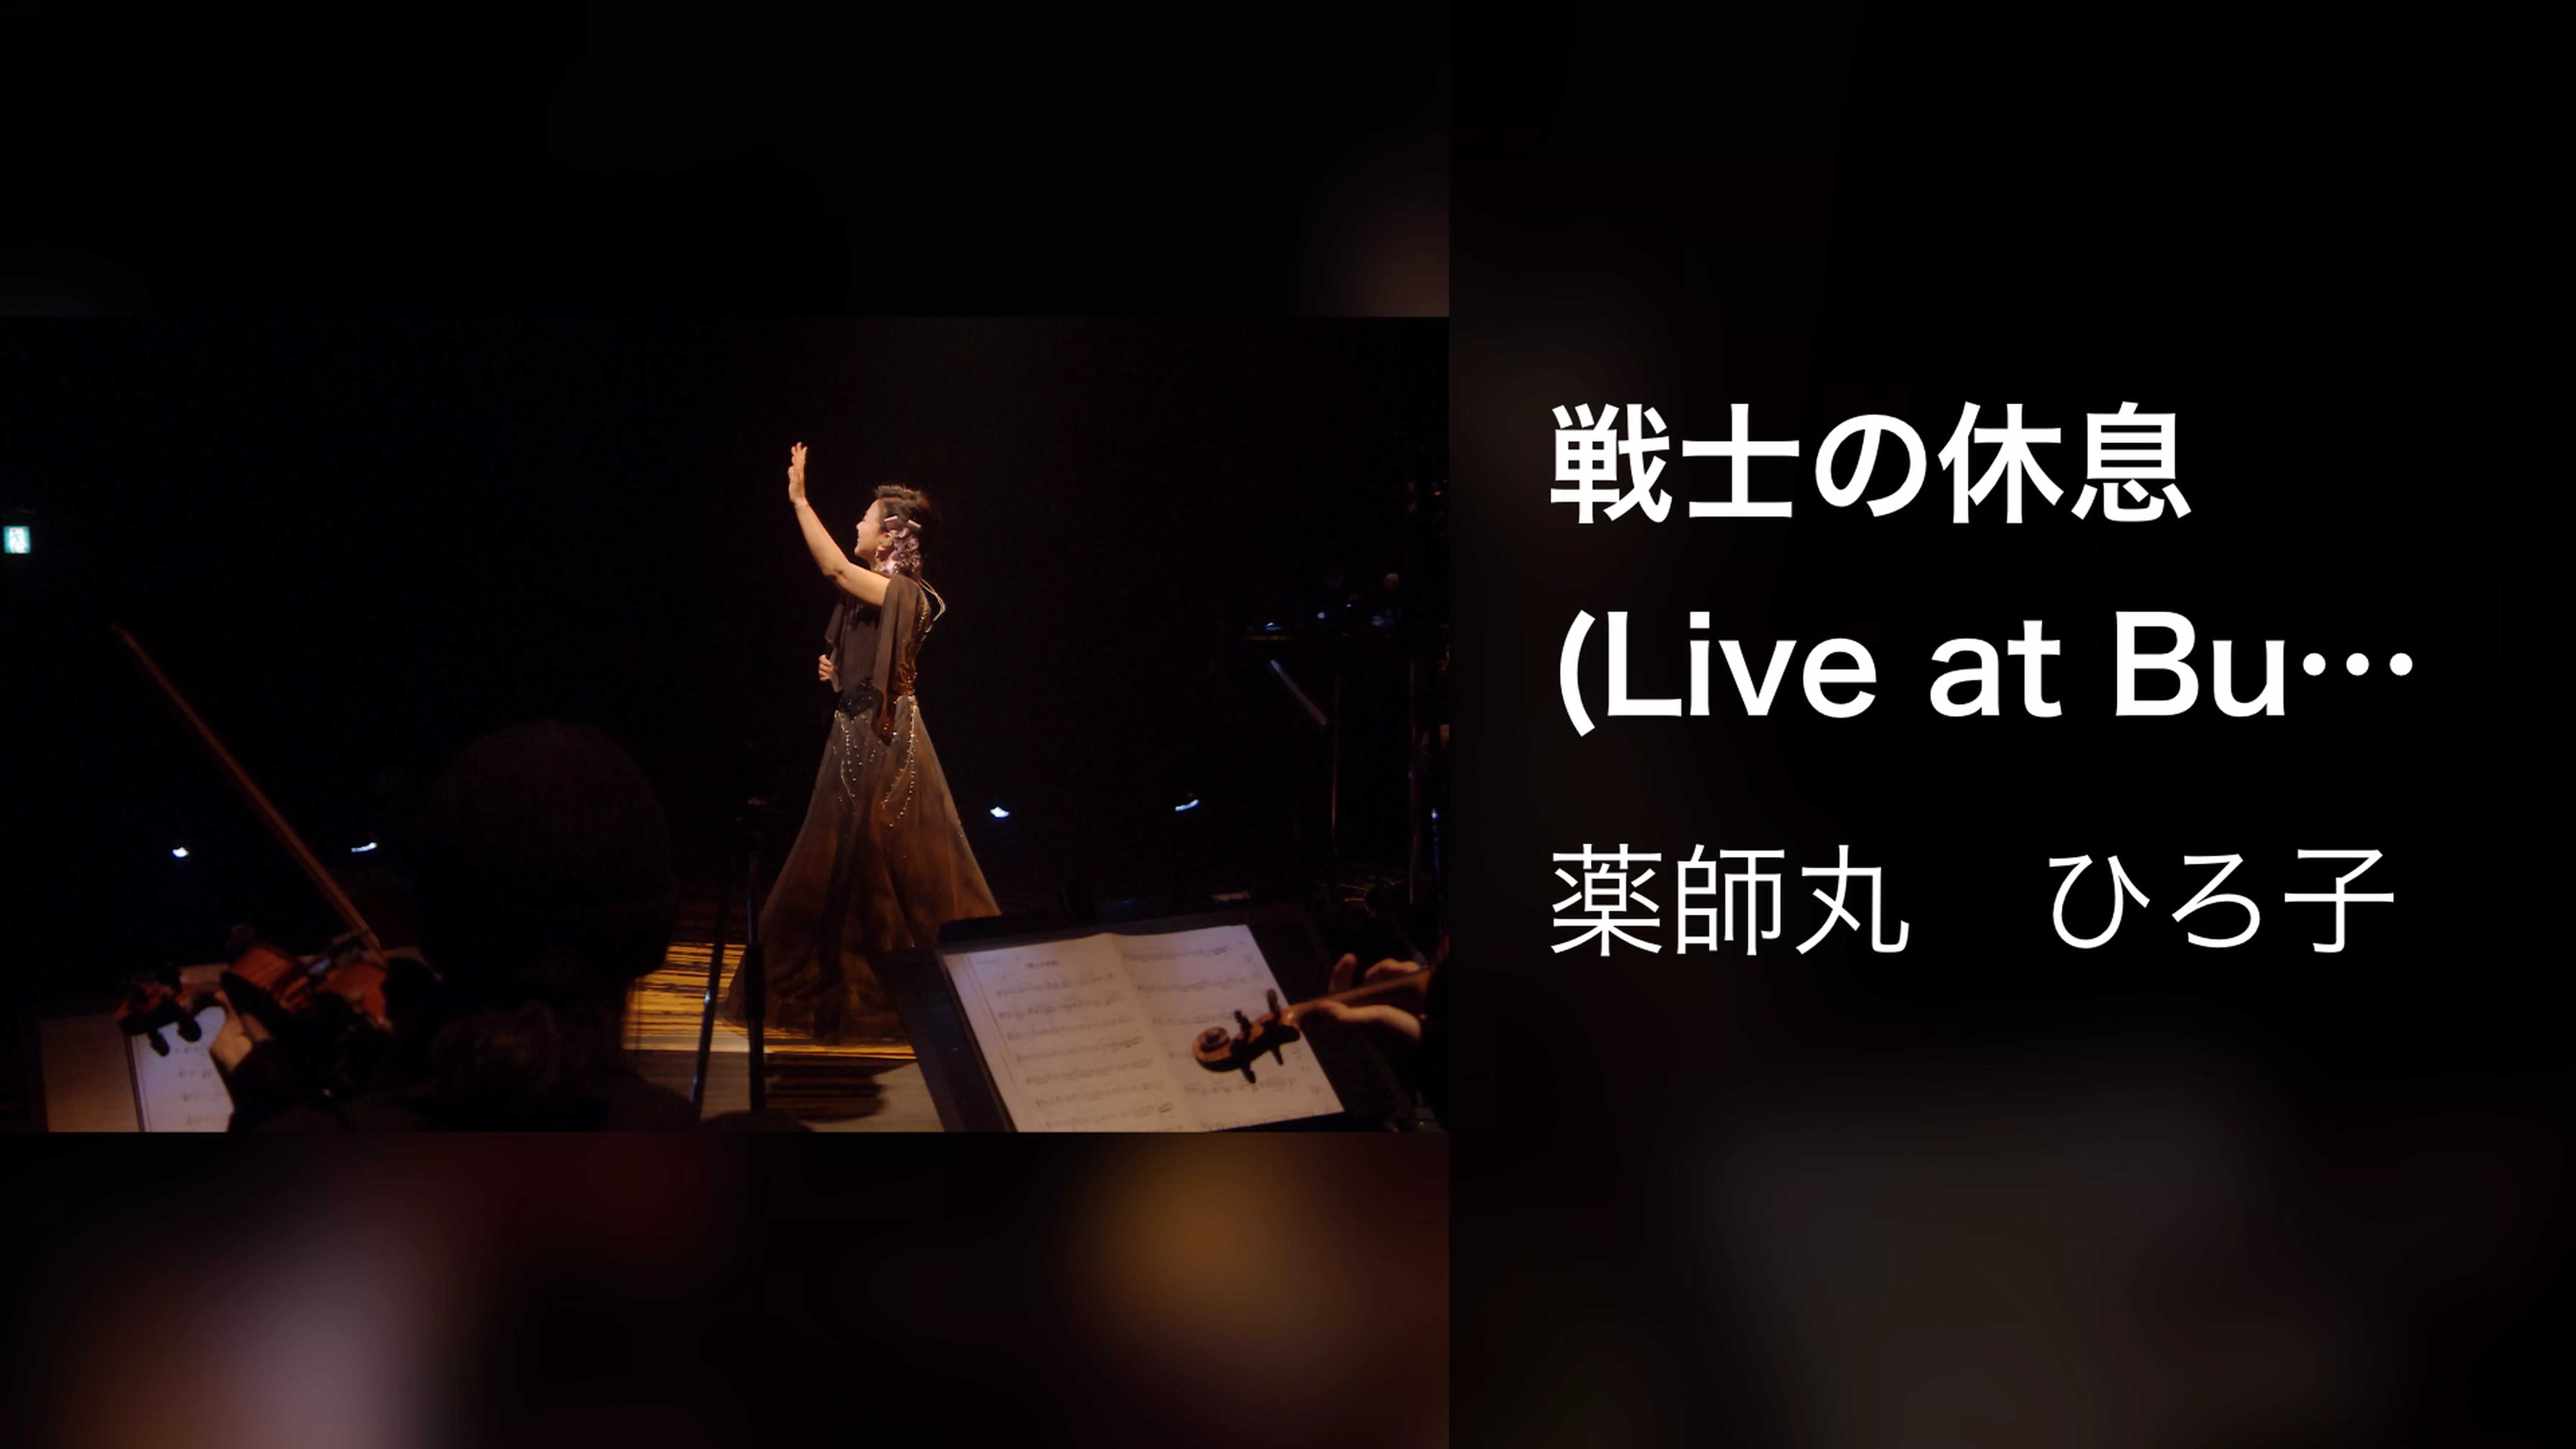 戦士の休息 (Live at Bunkamura Orchard Hall on February 16, 2018)